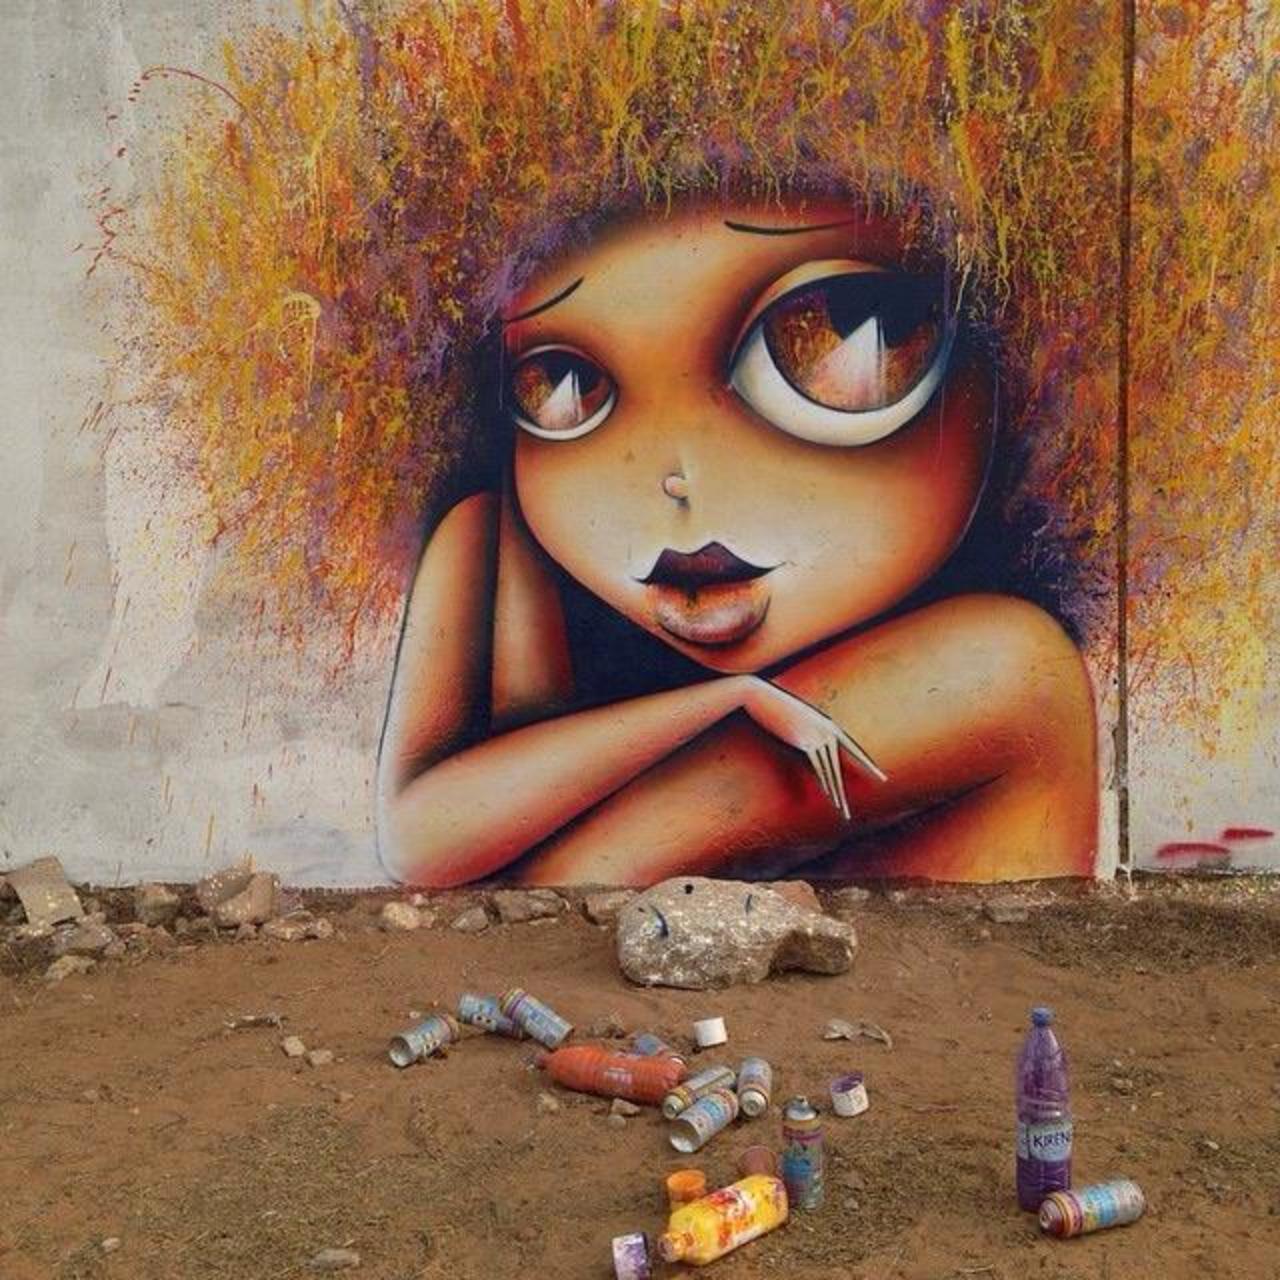 New Street Art by Vinie in Dakar, Senegal  

#art #arte #graffiti #streetart http://t.co/MxT6d5OmNY